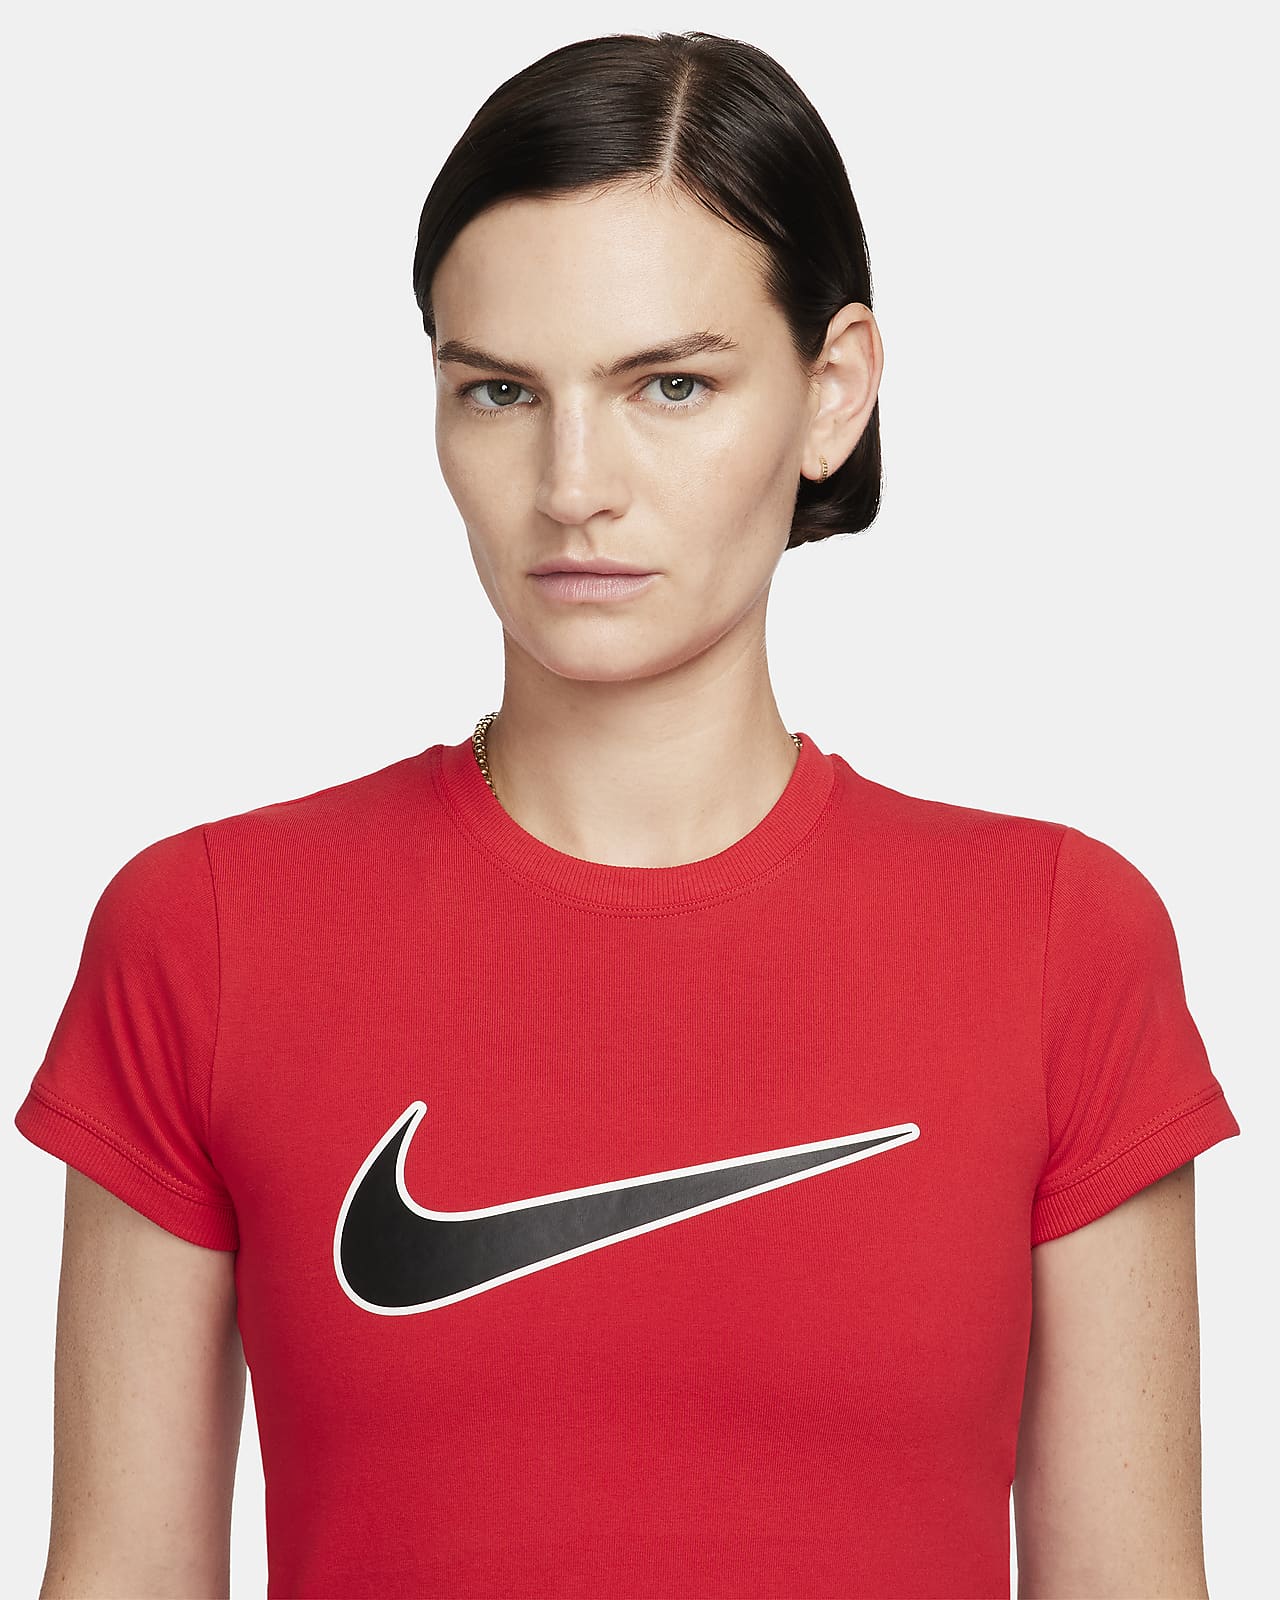 Women's Sportswear Products. Nike GB